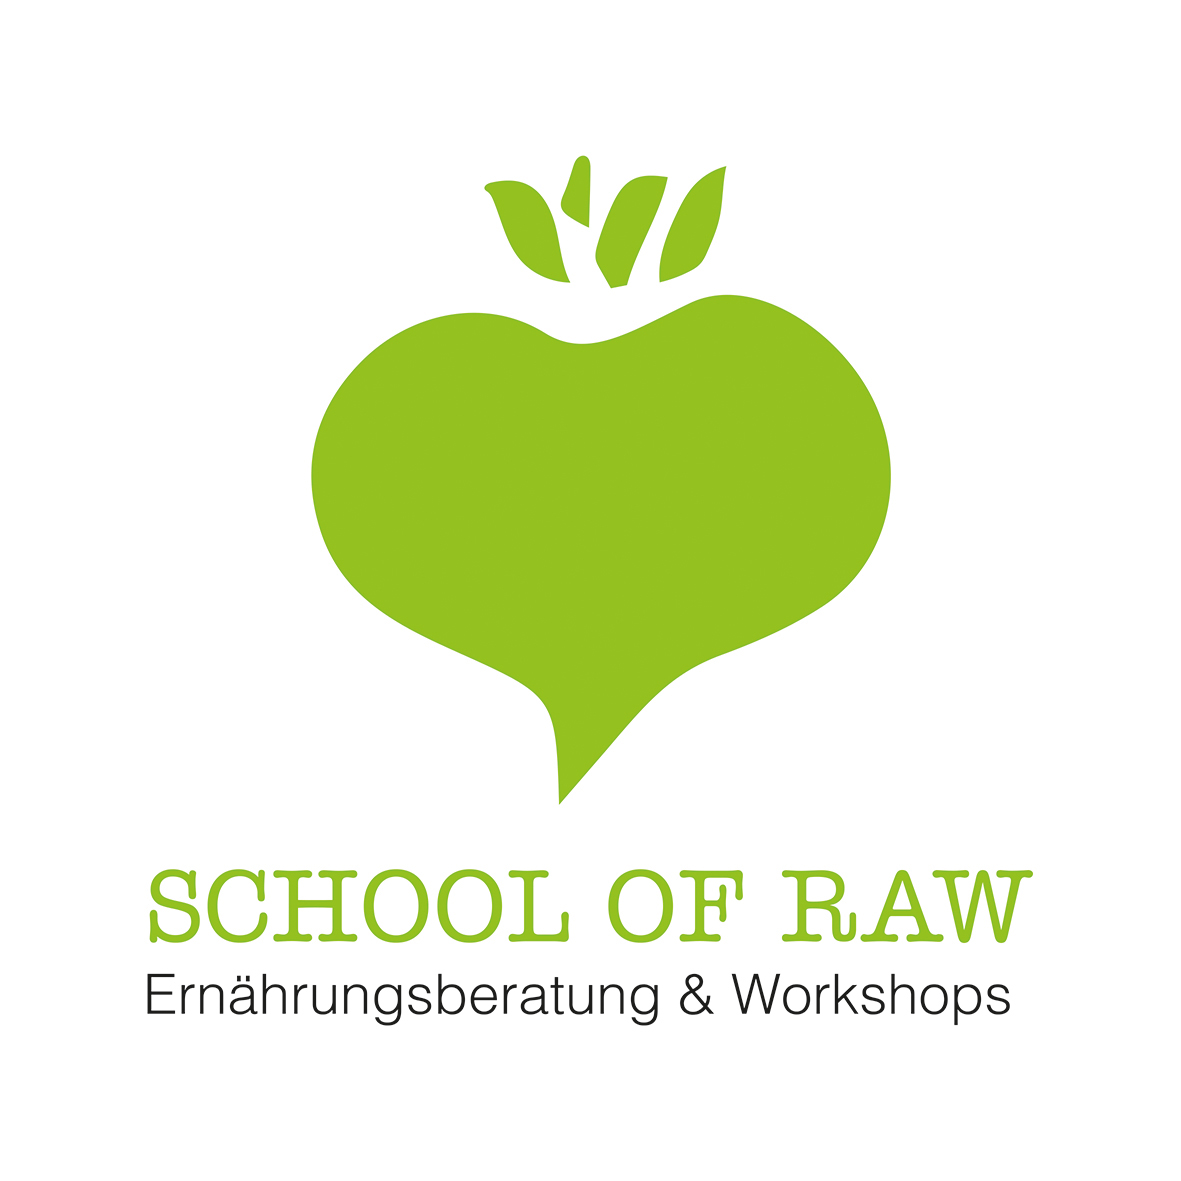 Eröffnung der School Of Raw - erste Workshops stehen fest! 12